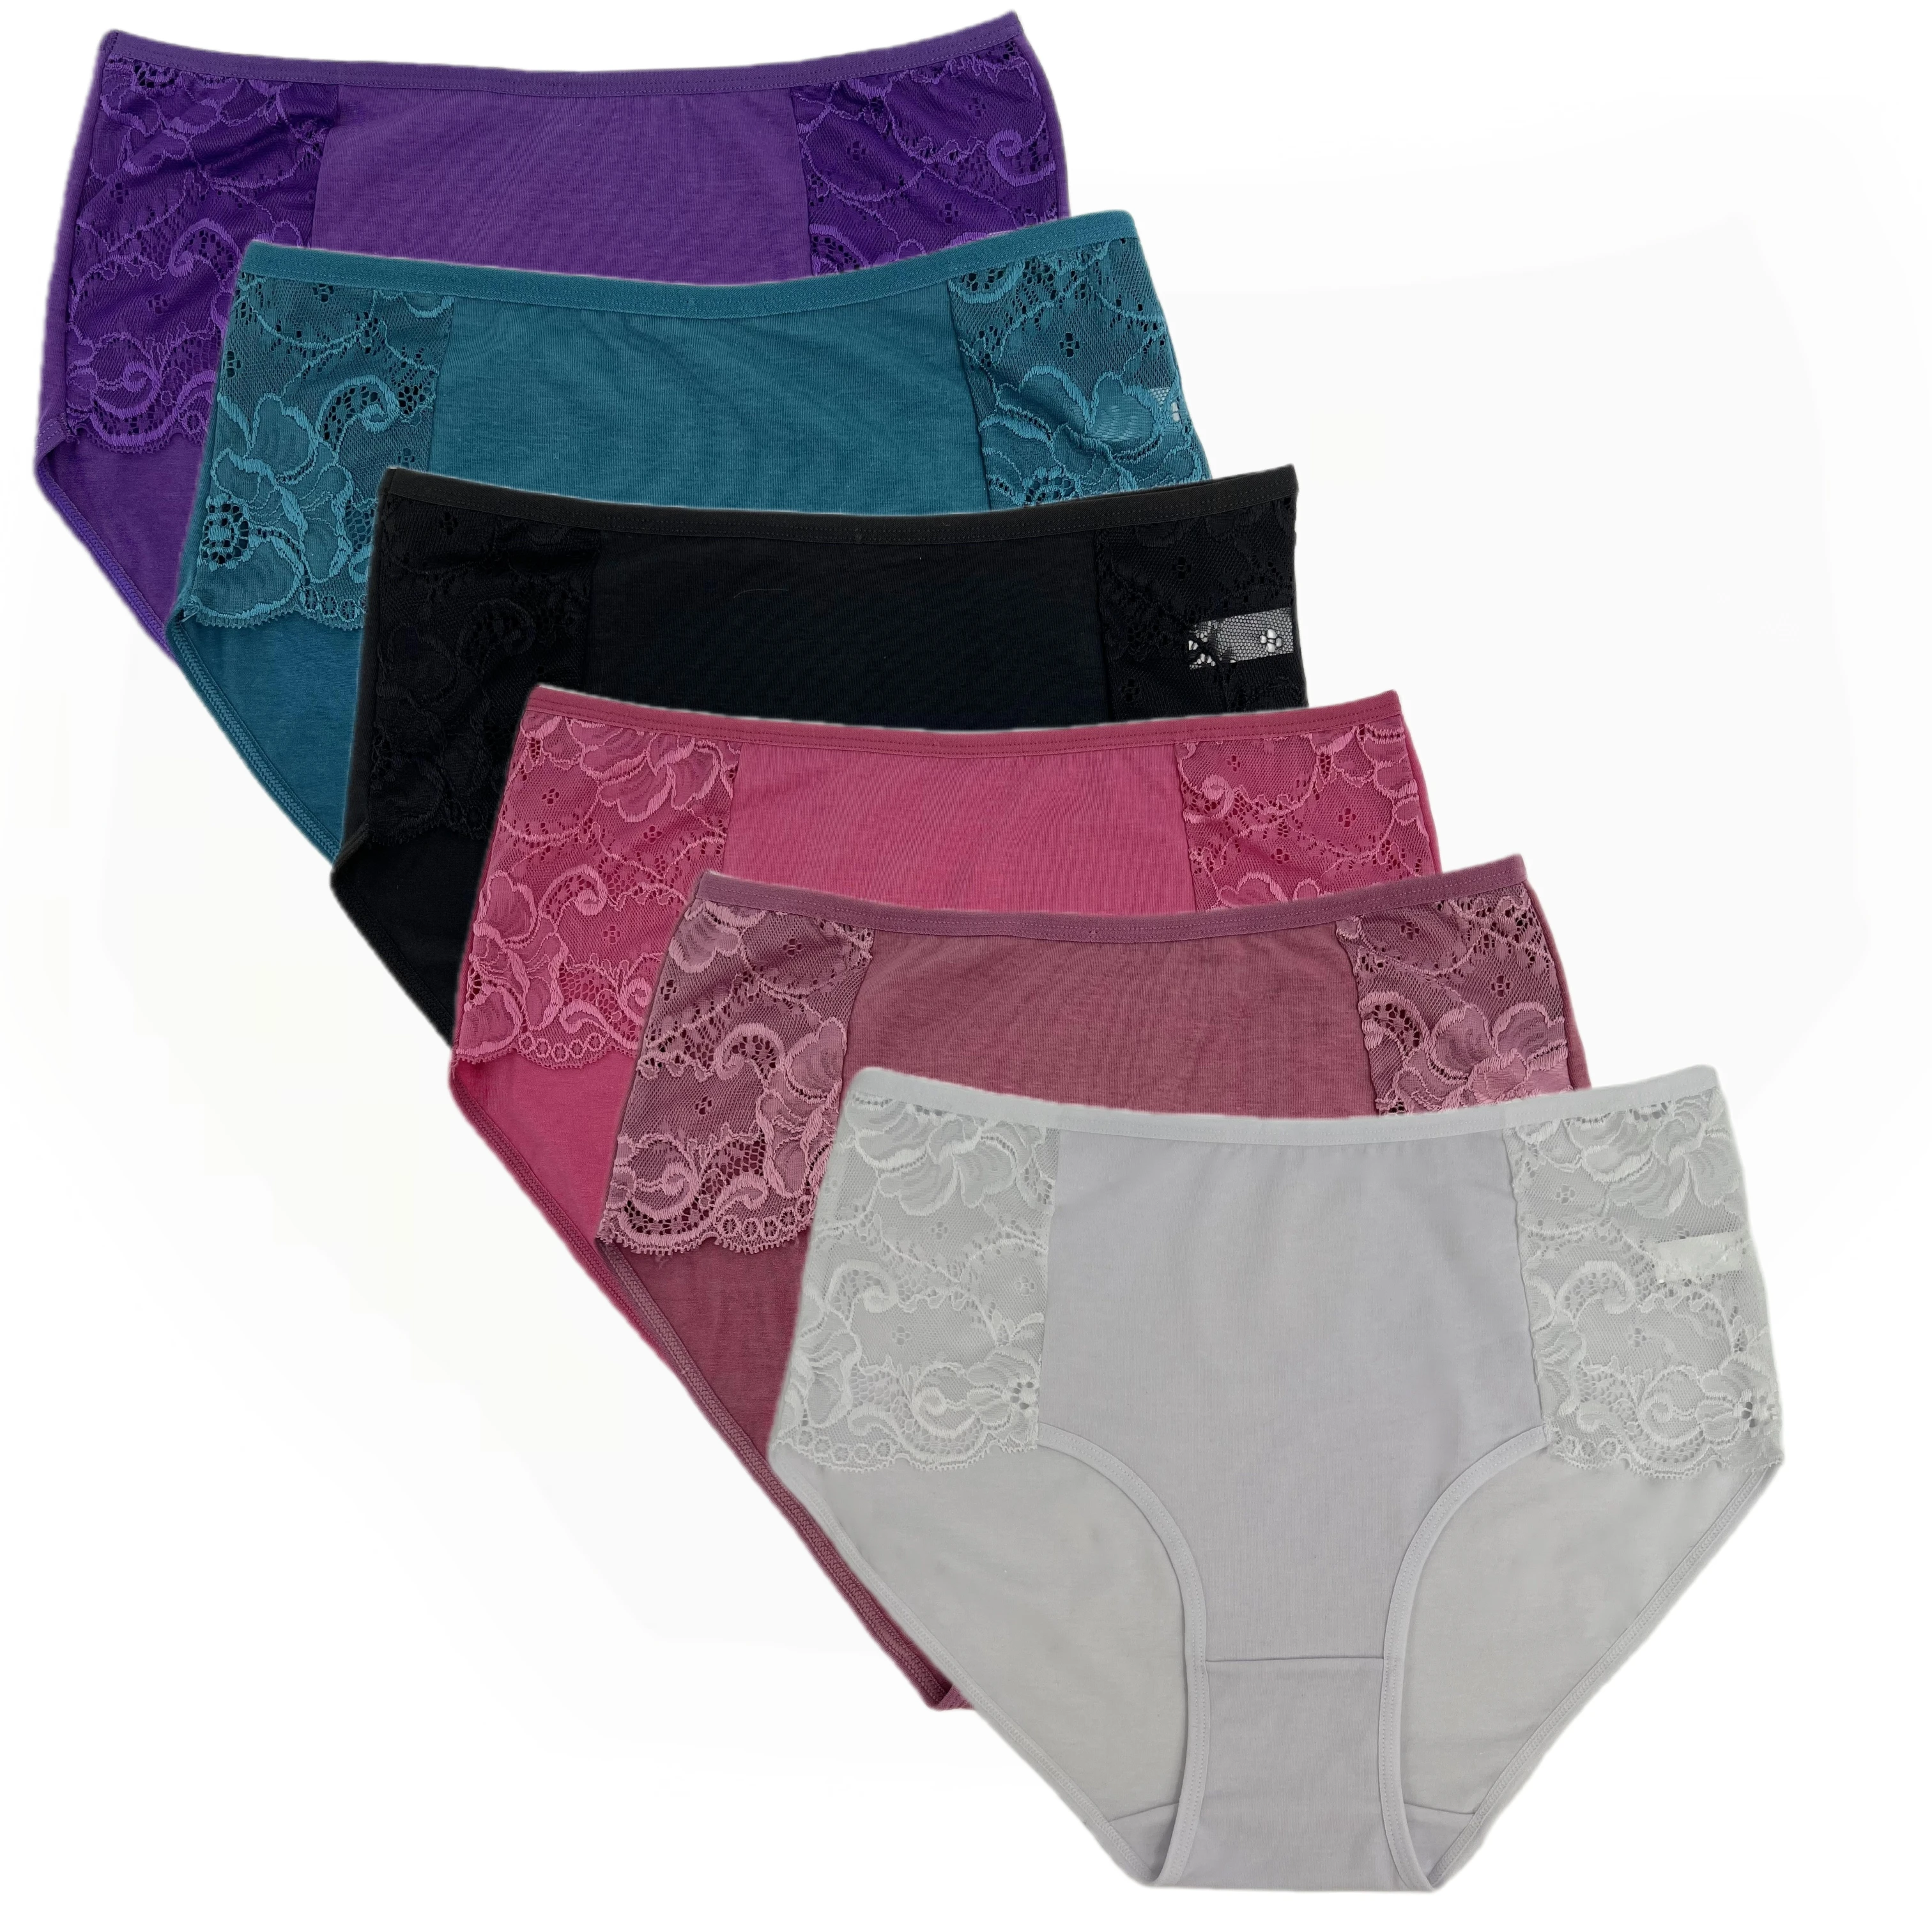 women's panties cotton briefs plus size lace underwear panty woman